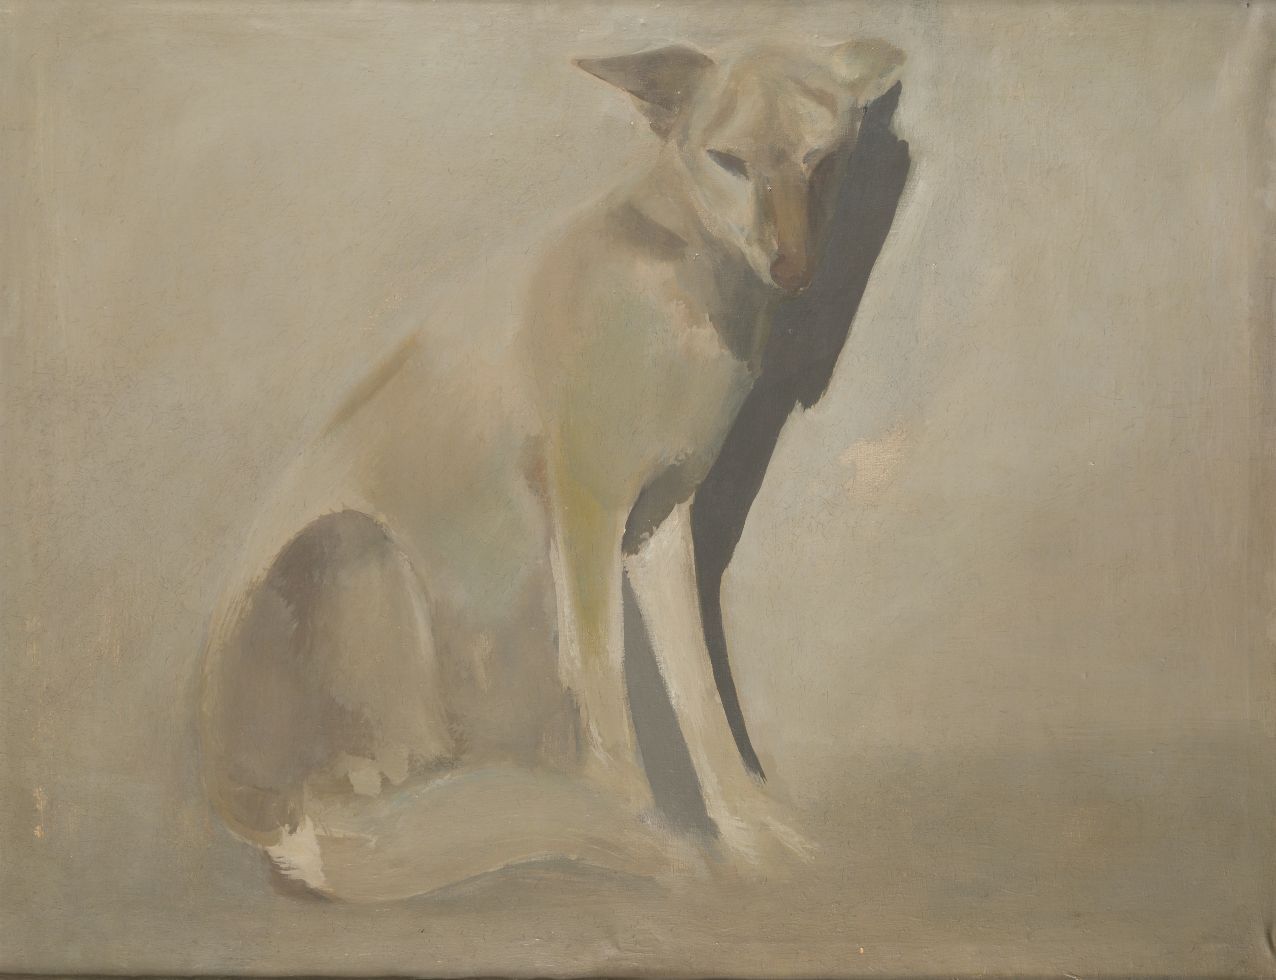 CONSTANTINO GRANDIO (1926 / 1977) "Dog" Huile sur toile. 90 x 116 cm